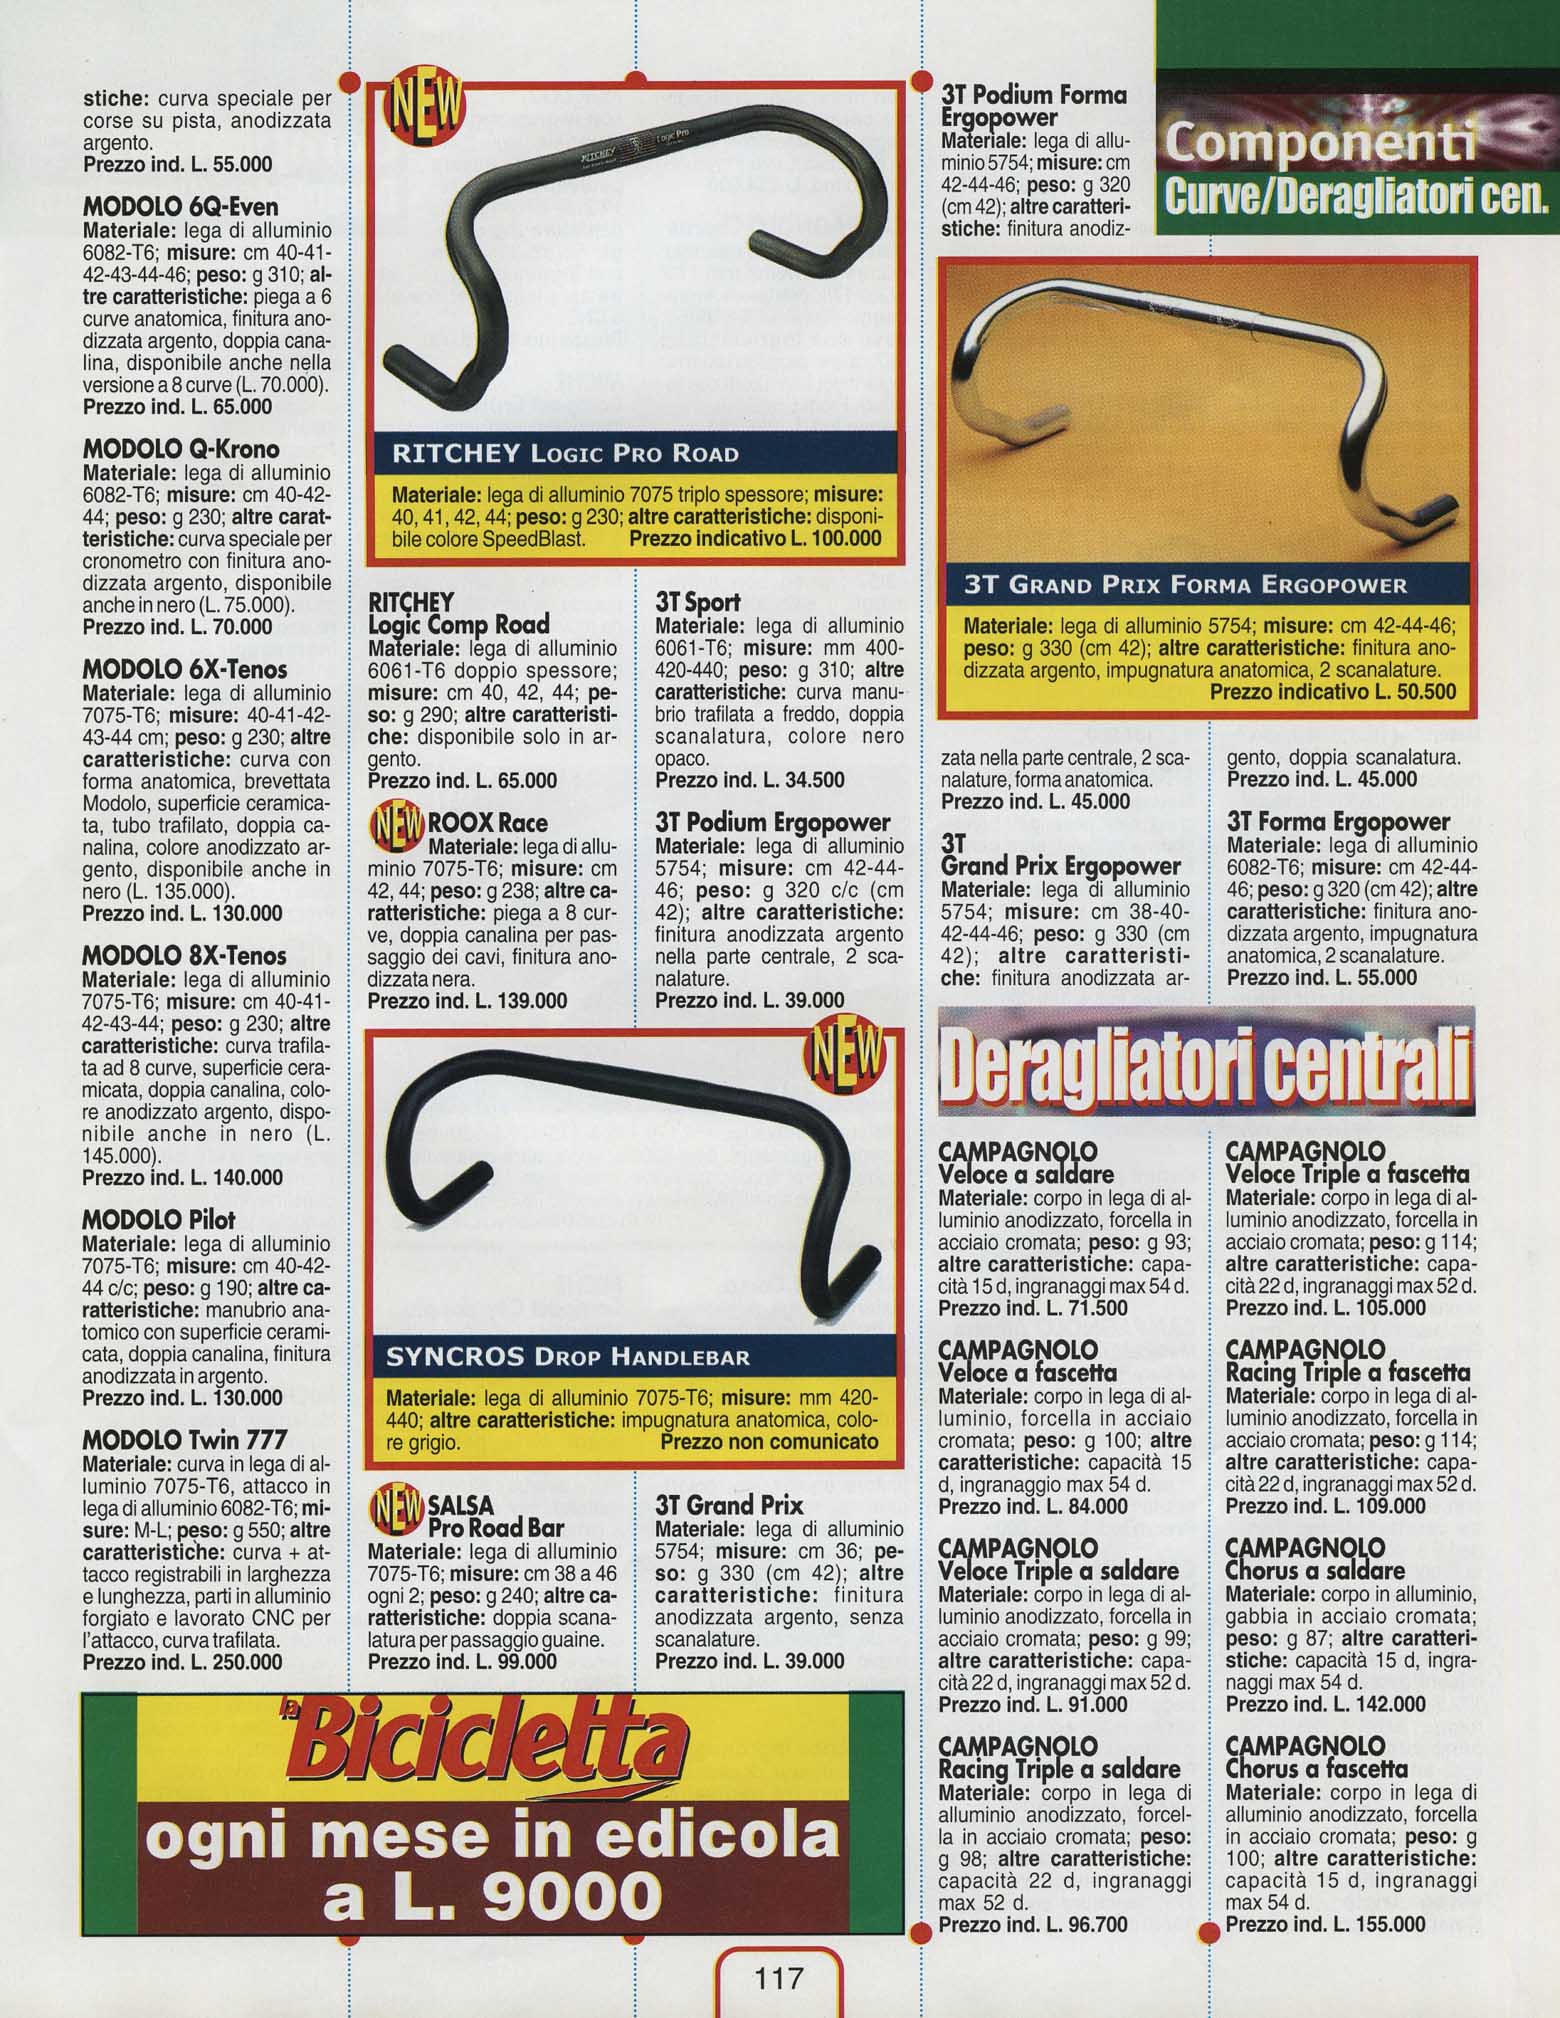 La Bicicletta Guida 99 - Componenti scan 26 main image